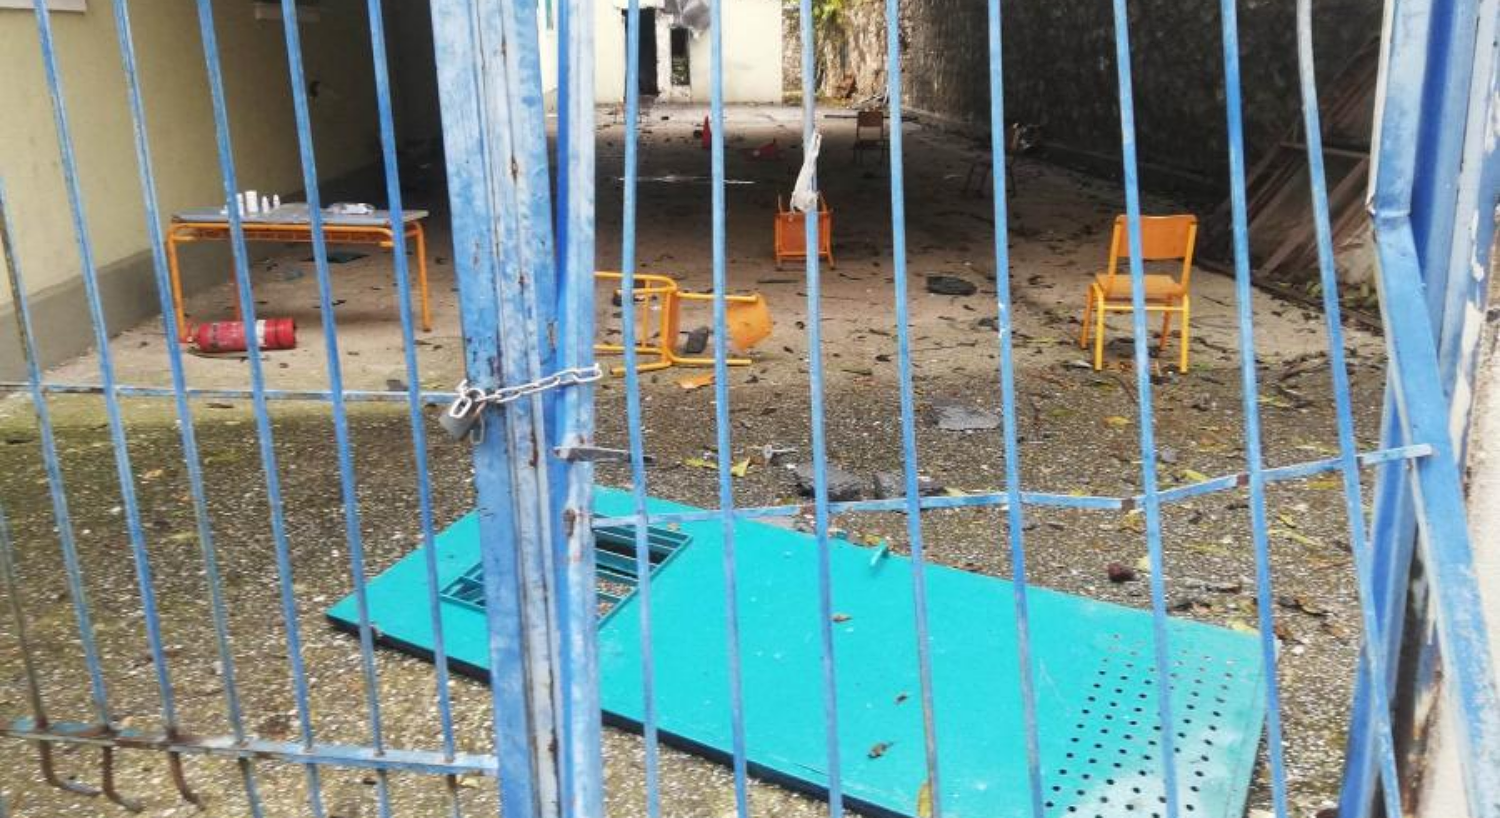 Στην Ελλάδα μαθητές γυρνούν νεκροί απ’ το σχολείο & φοιτητές πέφτουν απ’ τα παράθυρα